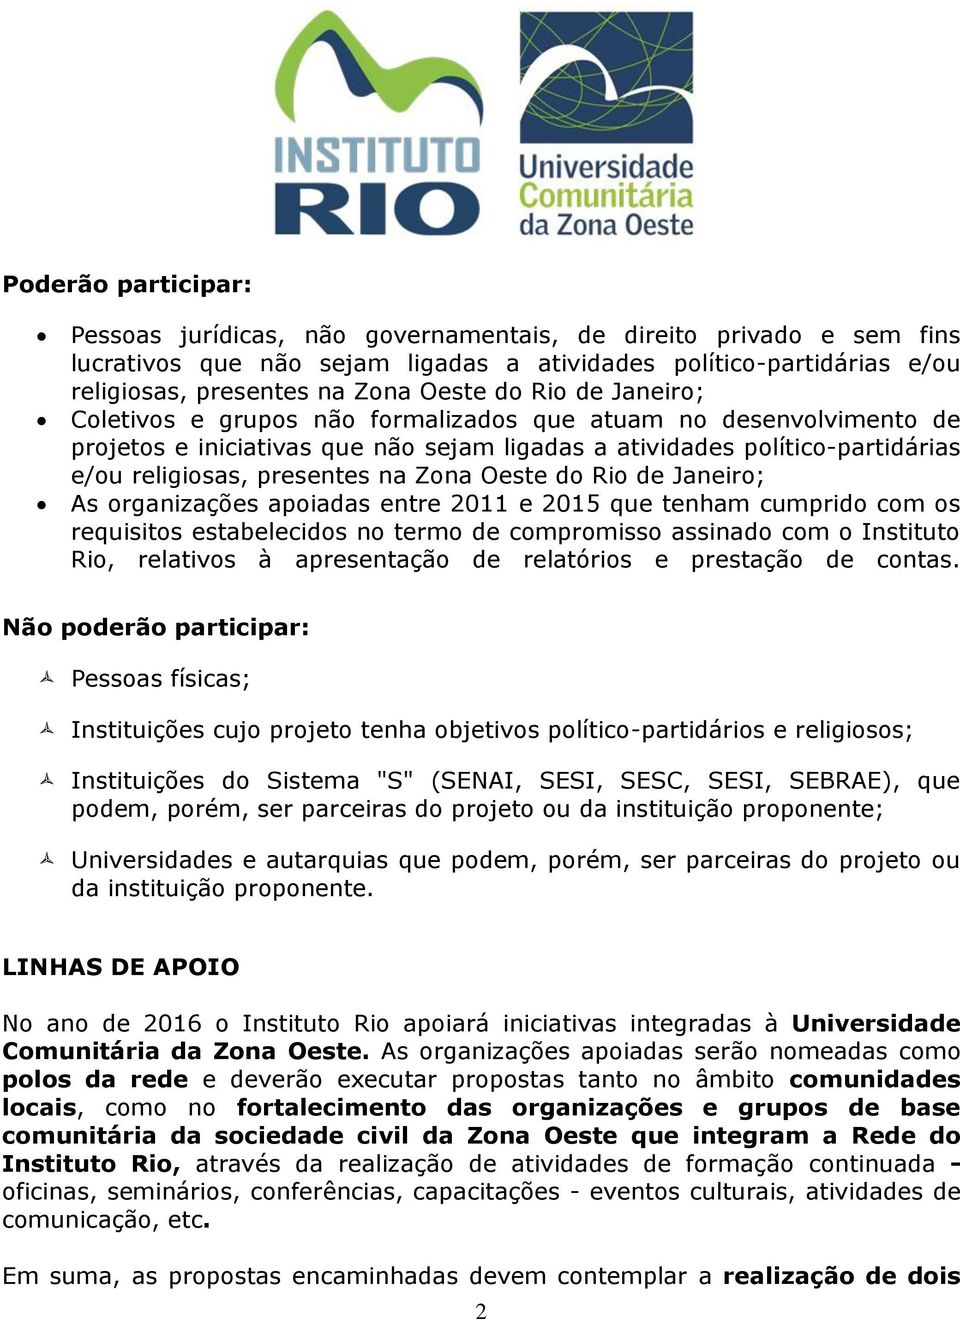 Oeste do Rio de Janeiro; As organizações apoiadas entre 2011 e 2015 que tenham cumprido com os requisitos estabelecidos no termo de compromisso assinado com o Instituto Rio, relativos à apresentação